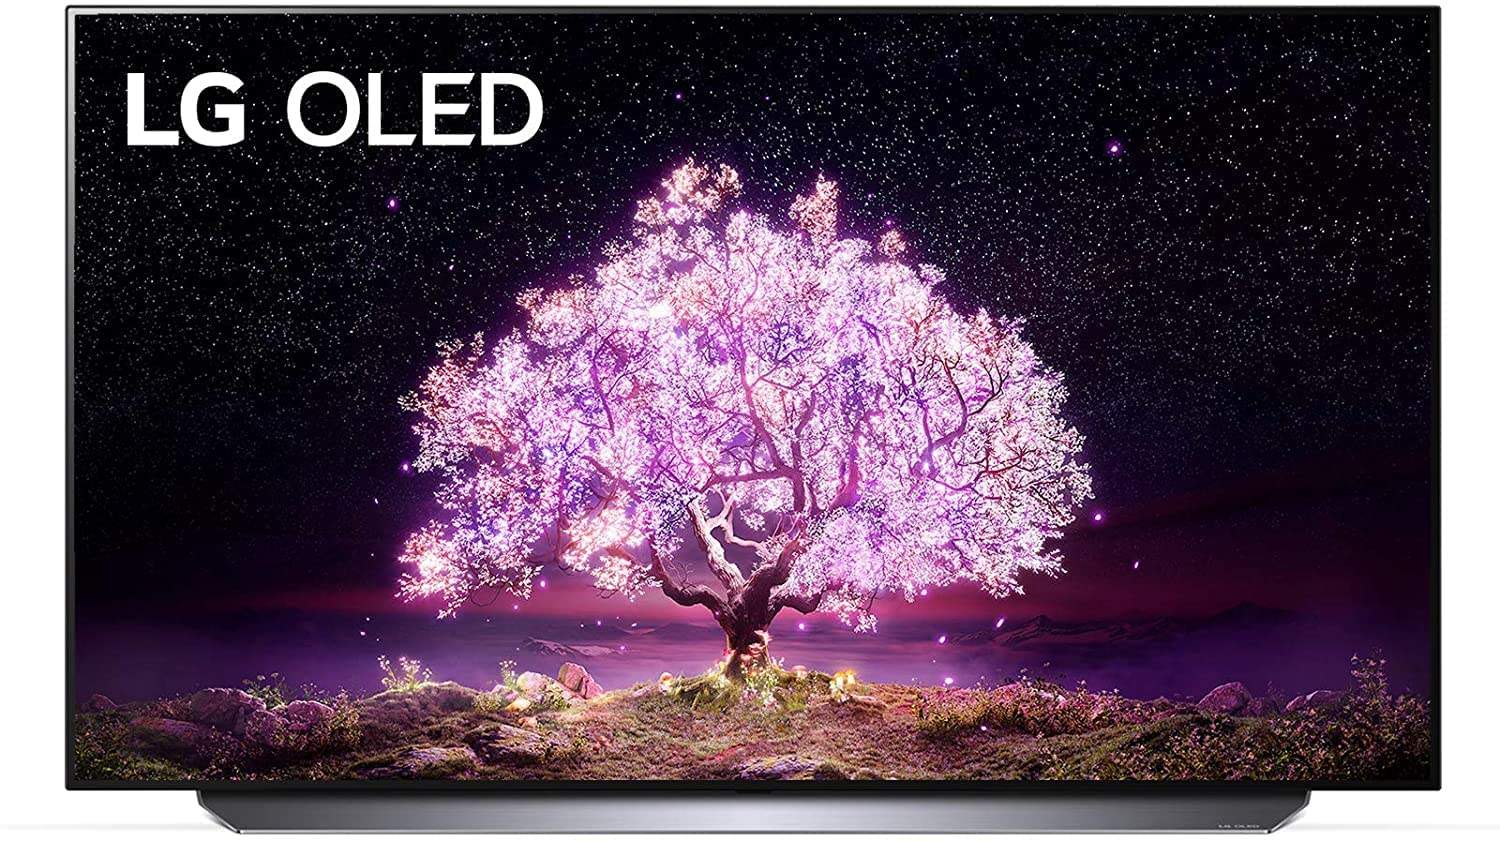 LG OLED 65" Smart TV